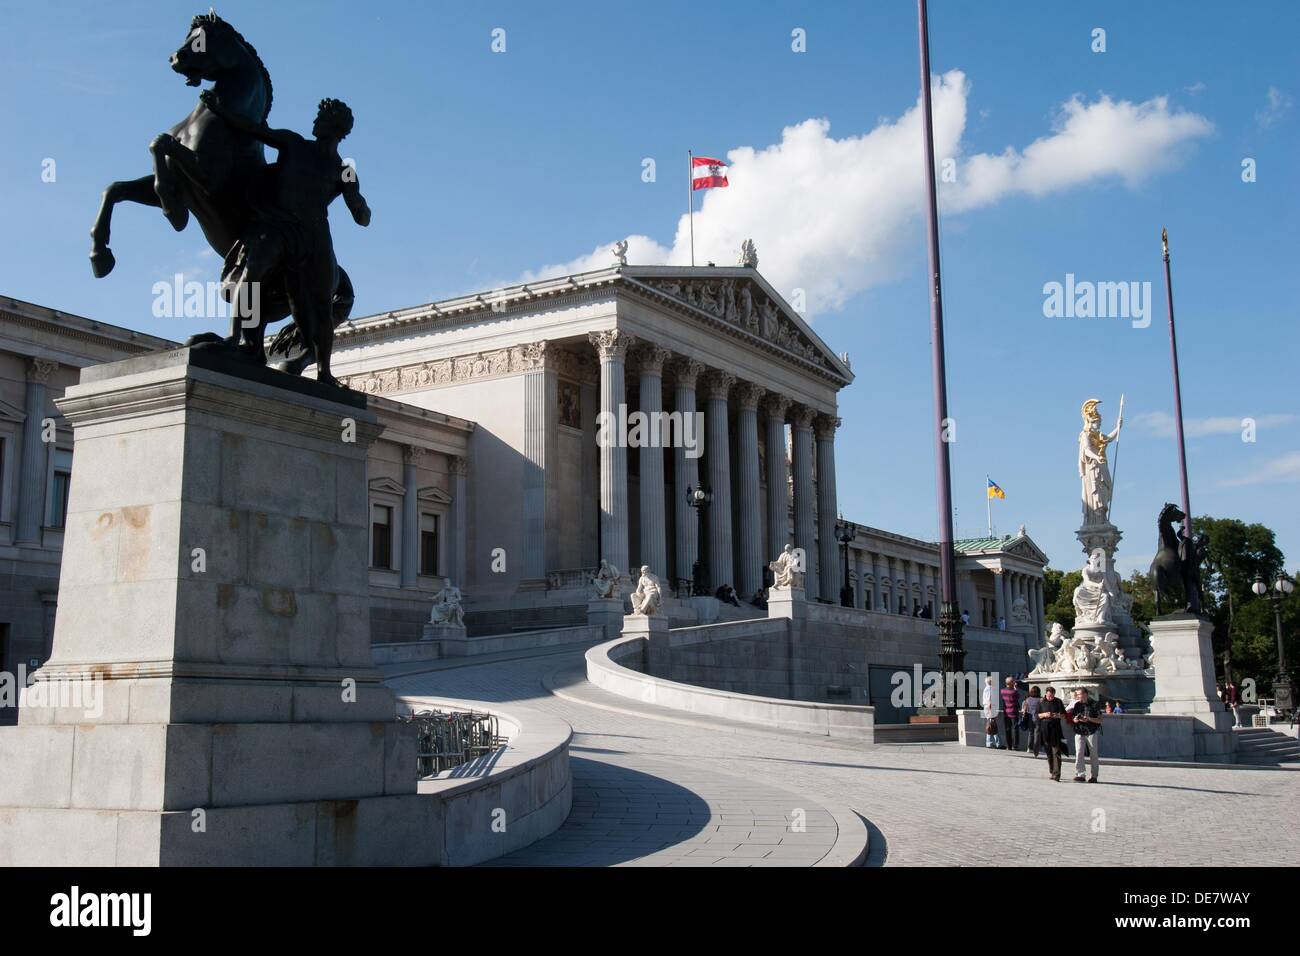 Parliament of Austria, Osterreichisches Parlament, Vienna, Austria Stock Photo